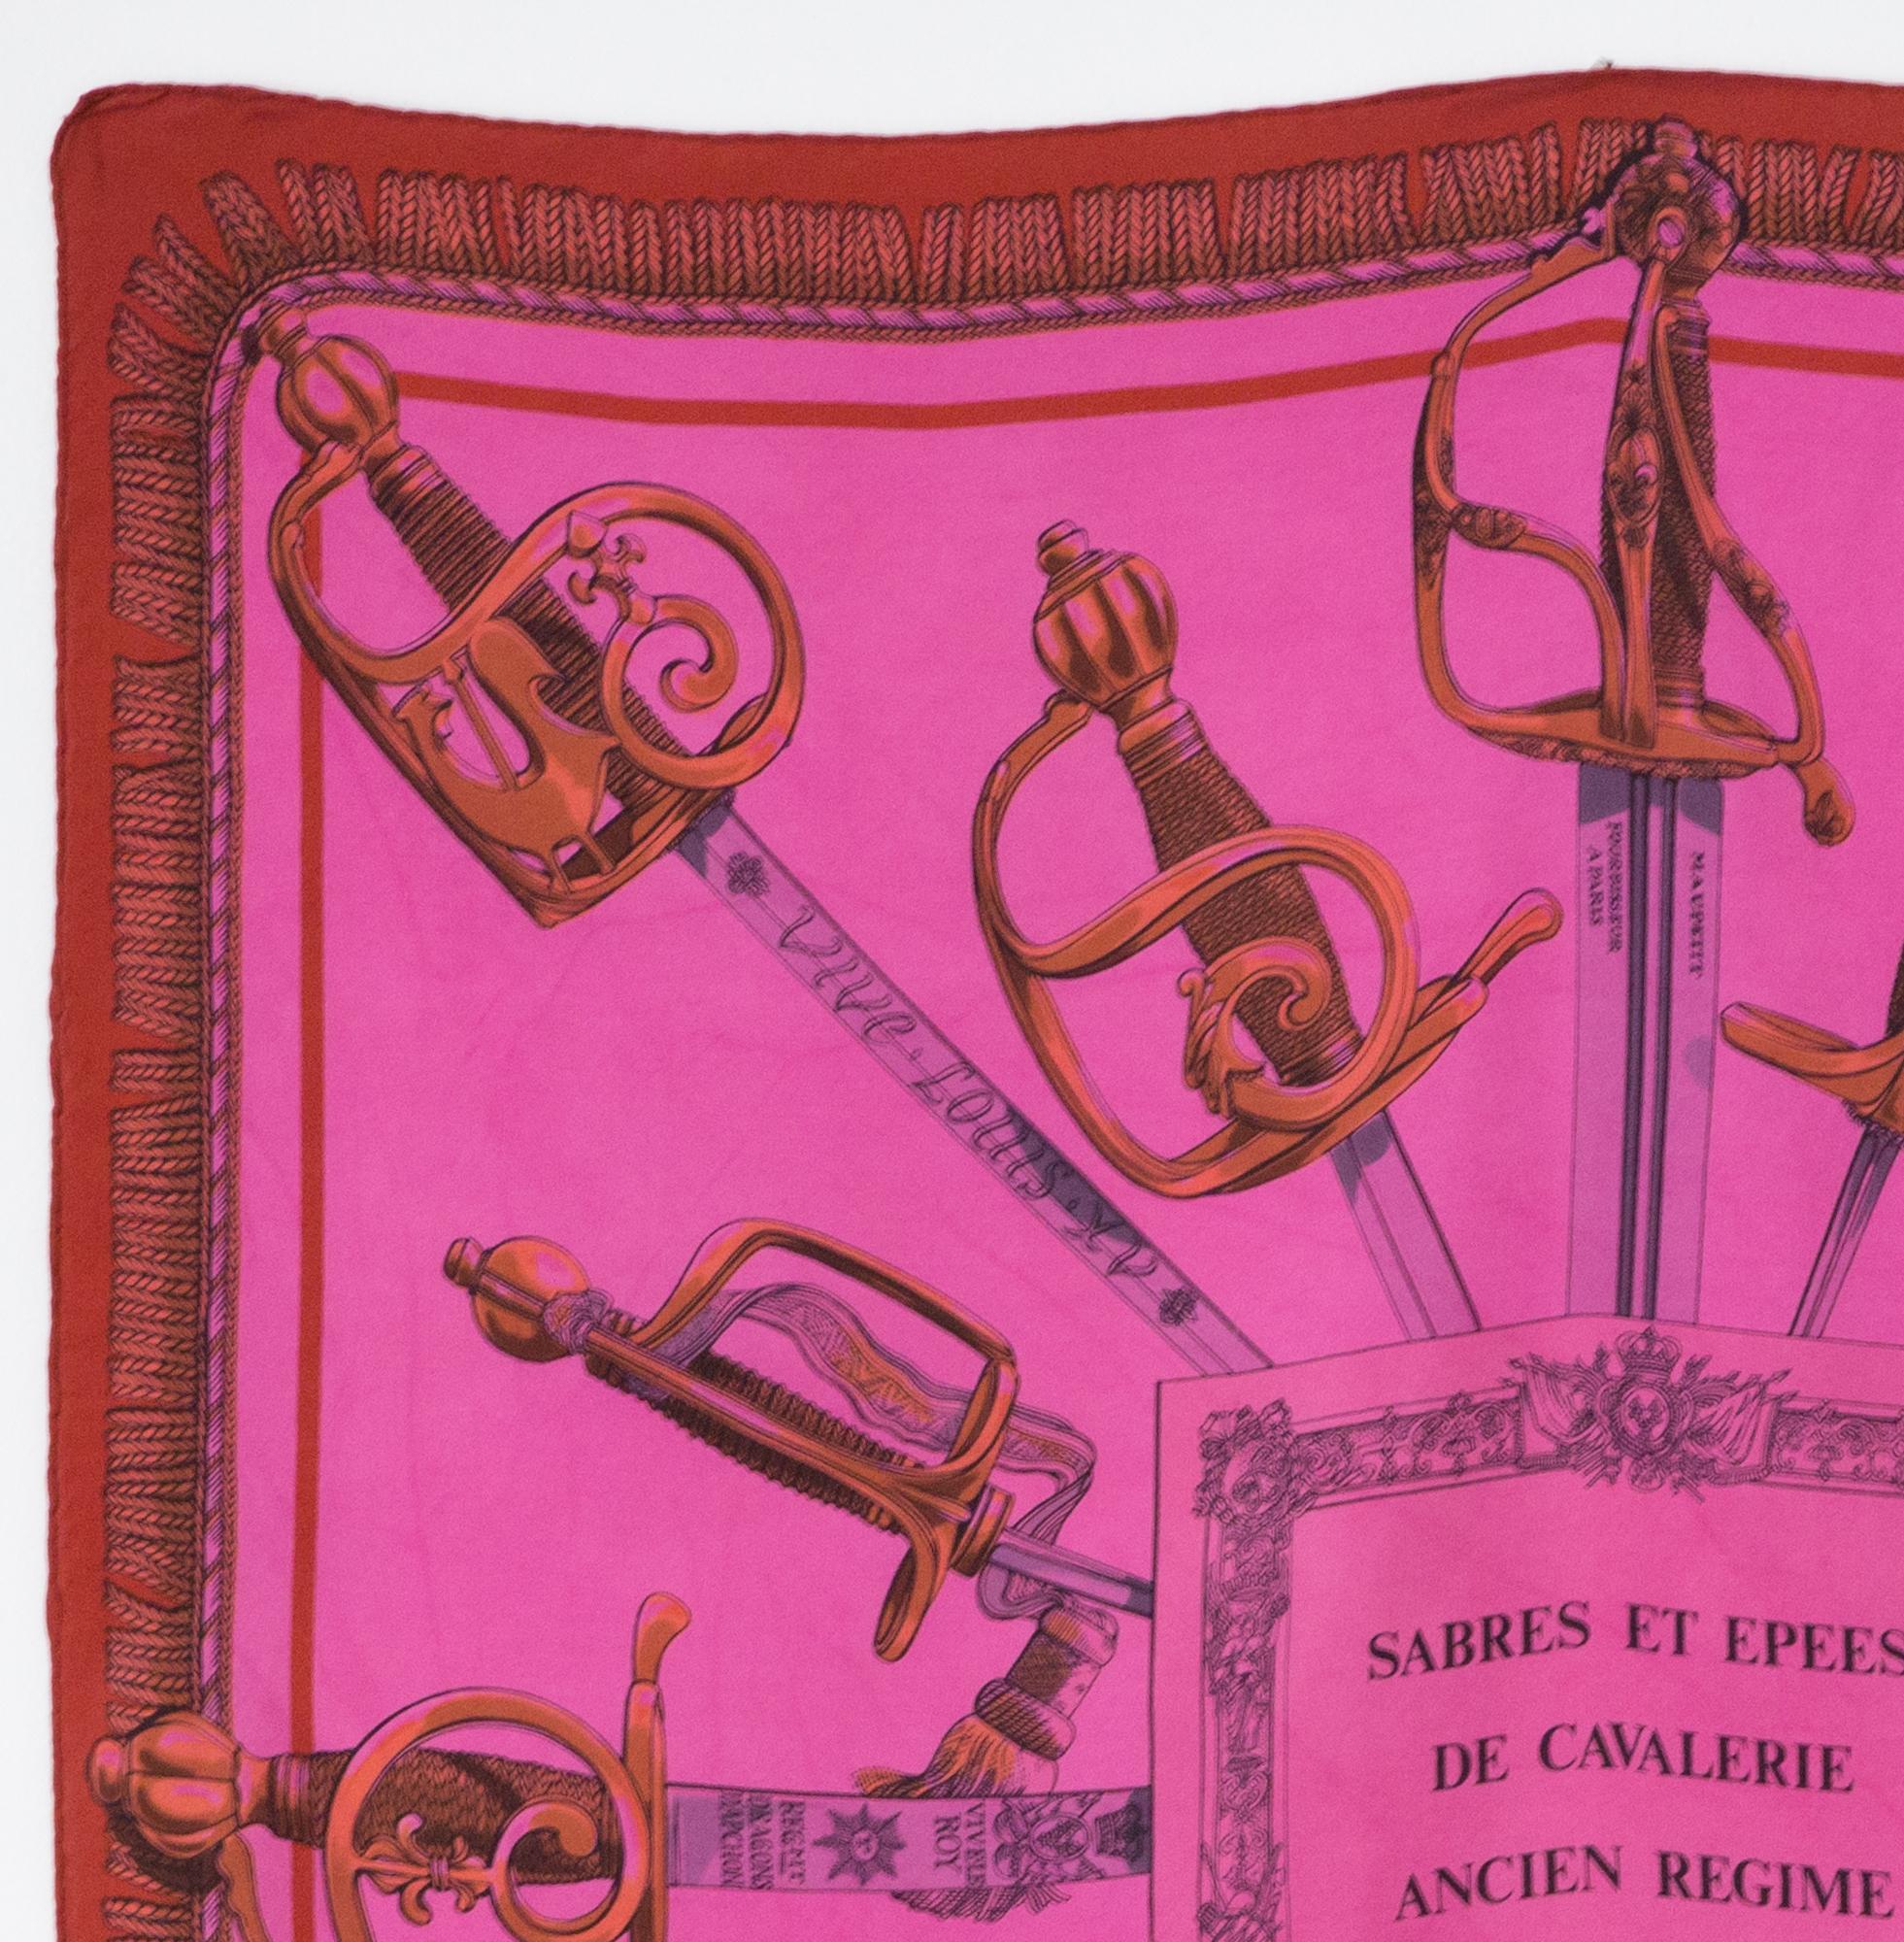 M.Petard Seidenschal Sabres et Epees de Cavalerie Ancien Regime mit rosa Überfärbung, signiert L.R. Paris und unterzeichnet M. Petard.
In gutem Vintage-Zustand. Hergestellt in Frankreich. 
33.5in. (85cm)  X 33.5in. (85cm)
Wir garantieren Ihnen, dass